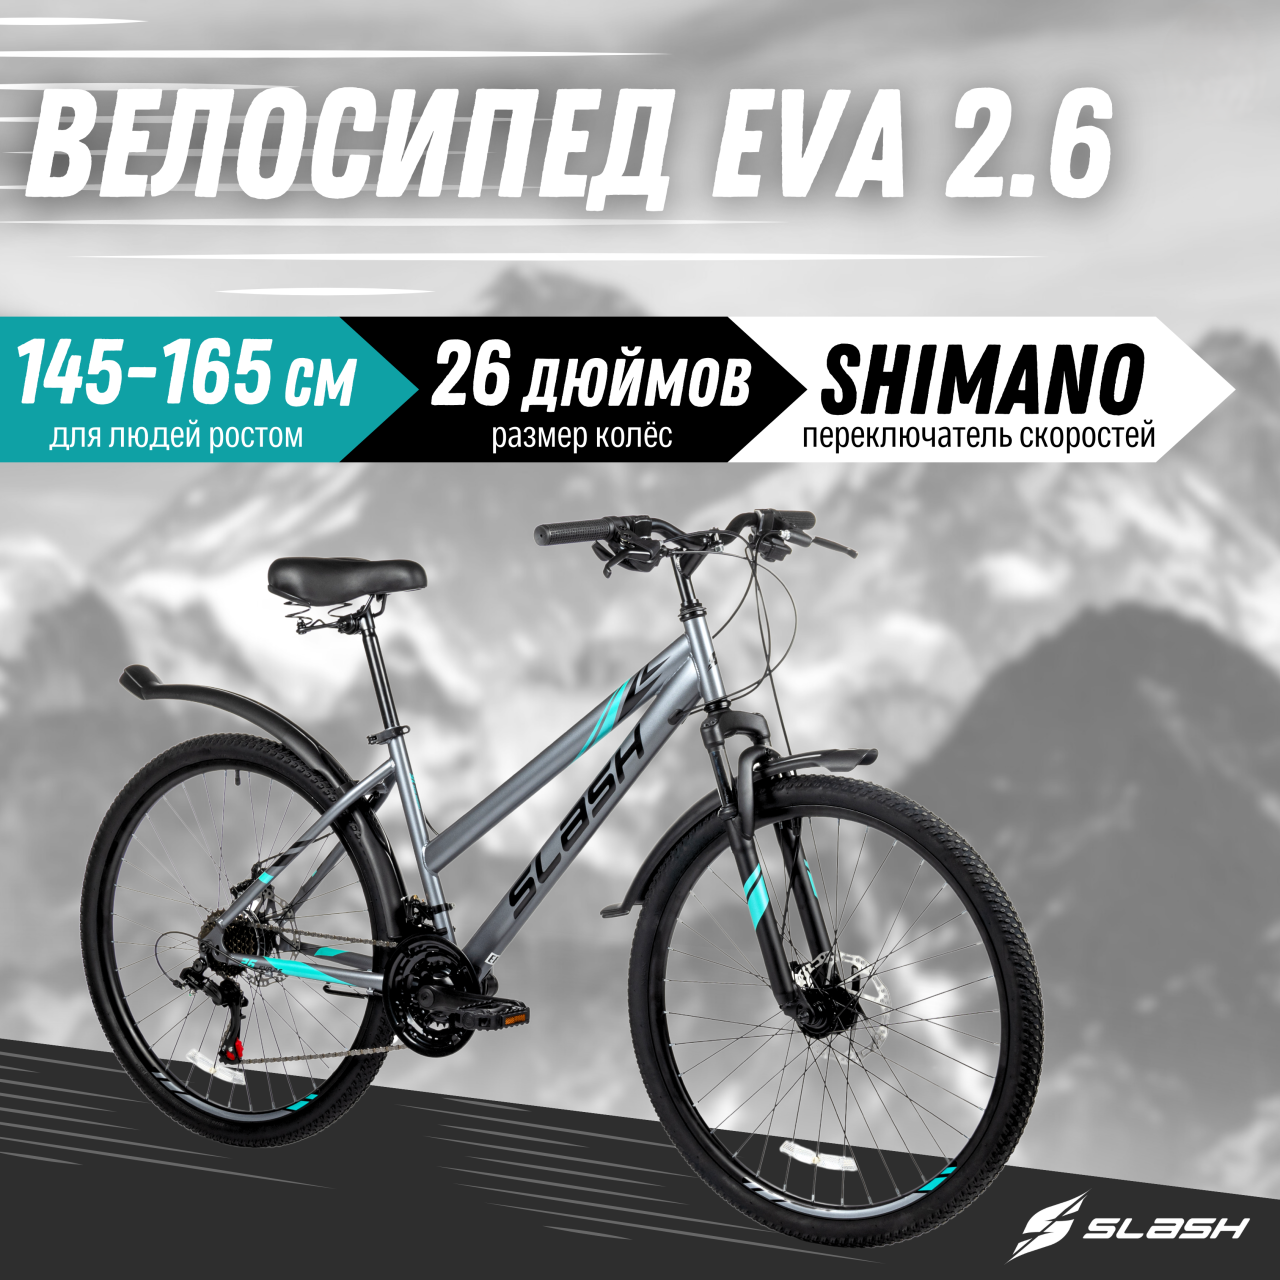 Горный велосипед Slash Eva серый, 26 радиус колеса, 21 скорость, рост 145-165 см